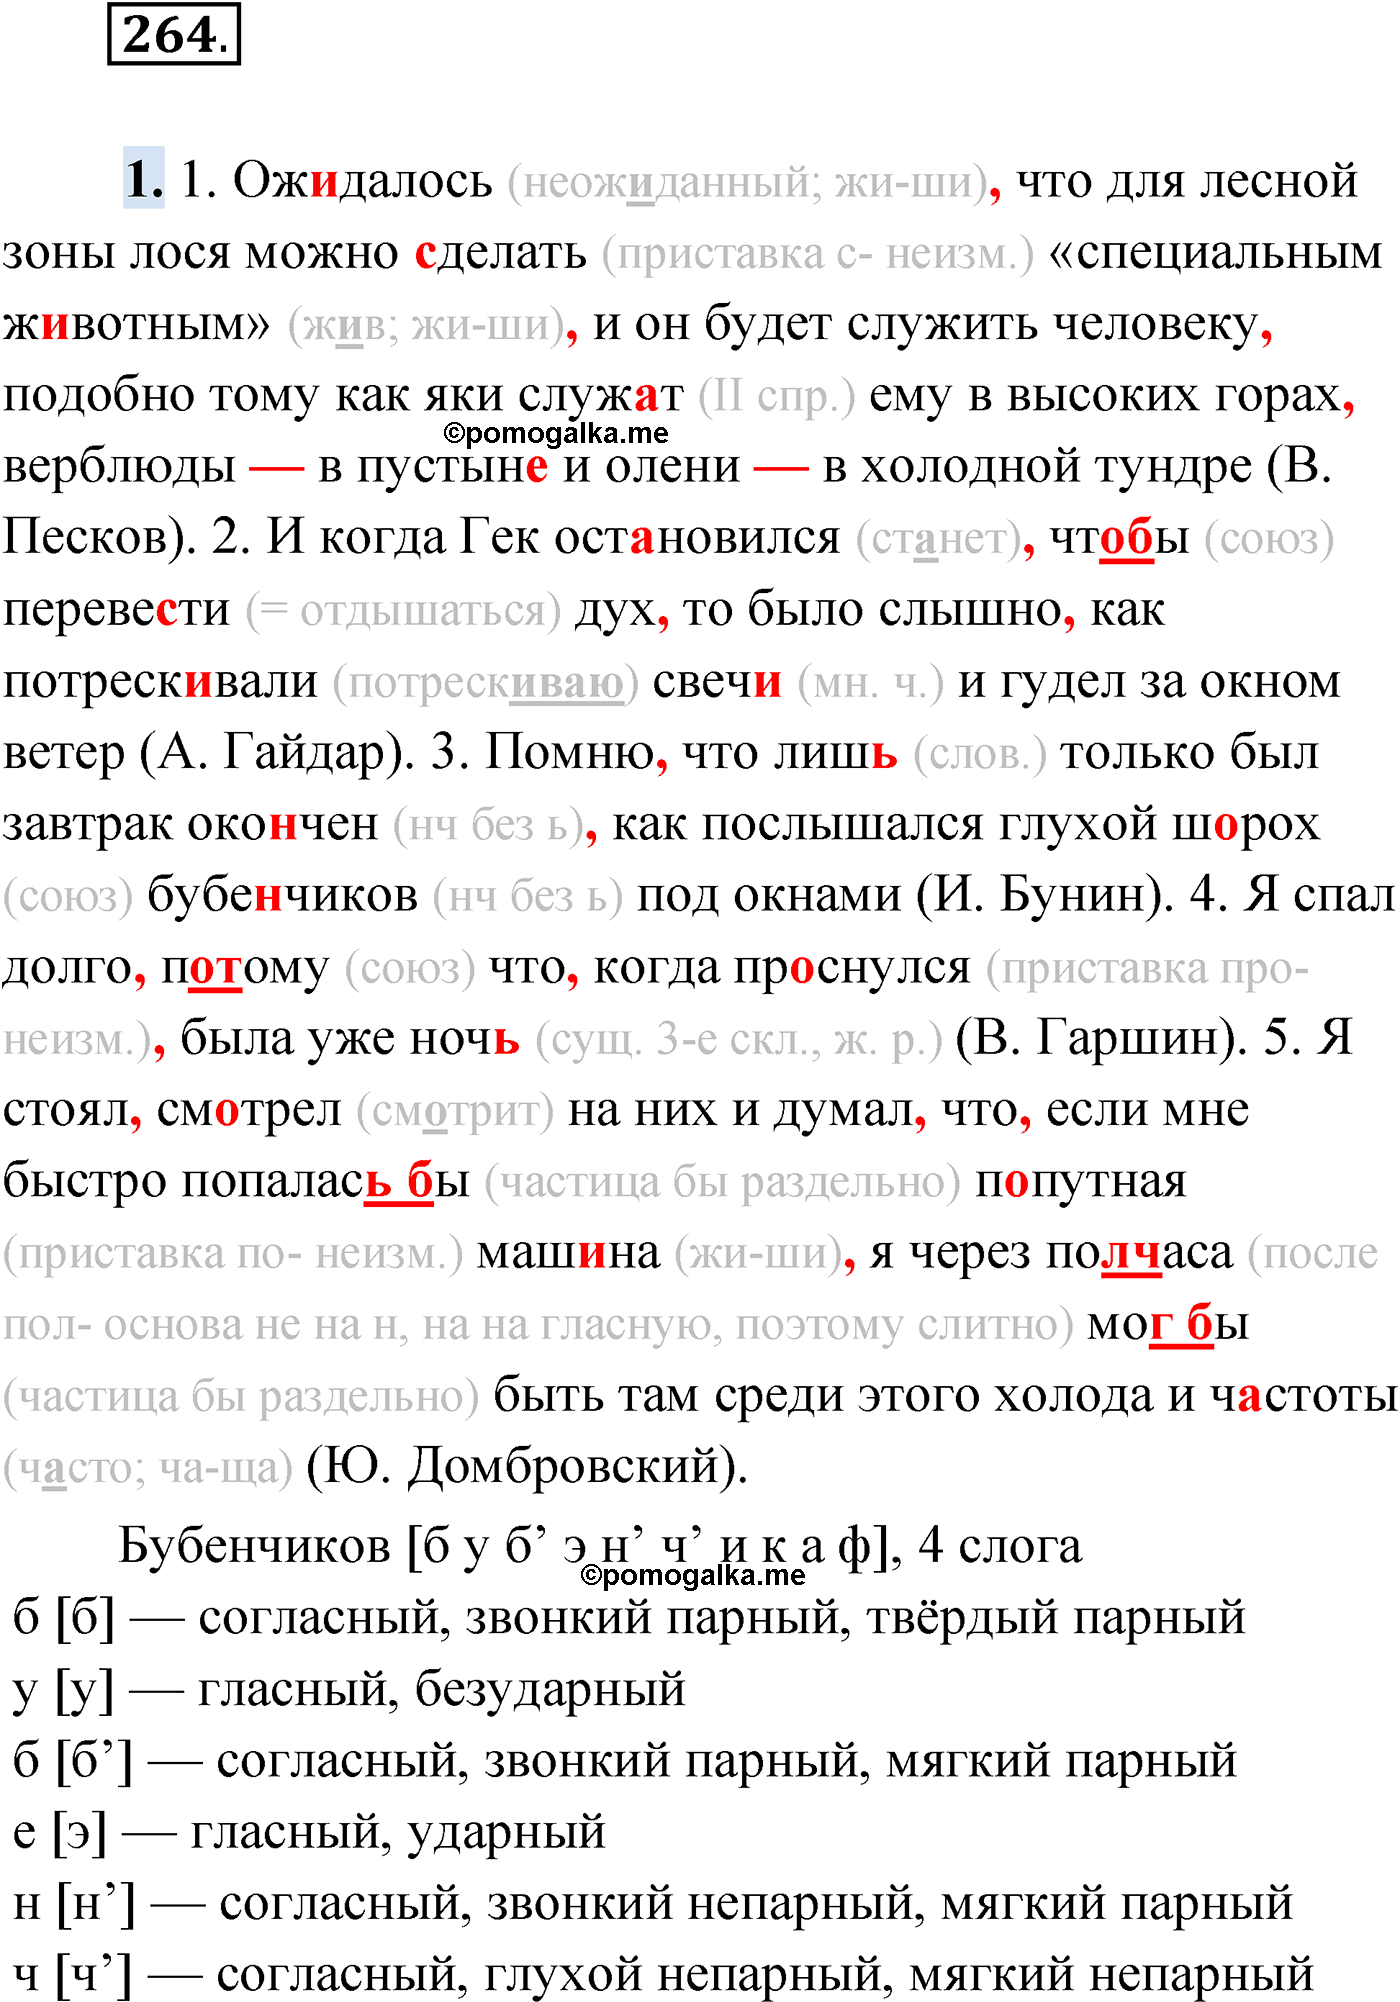 упражнение №264 русский язык 9 класс Мурина 2019 год